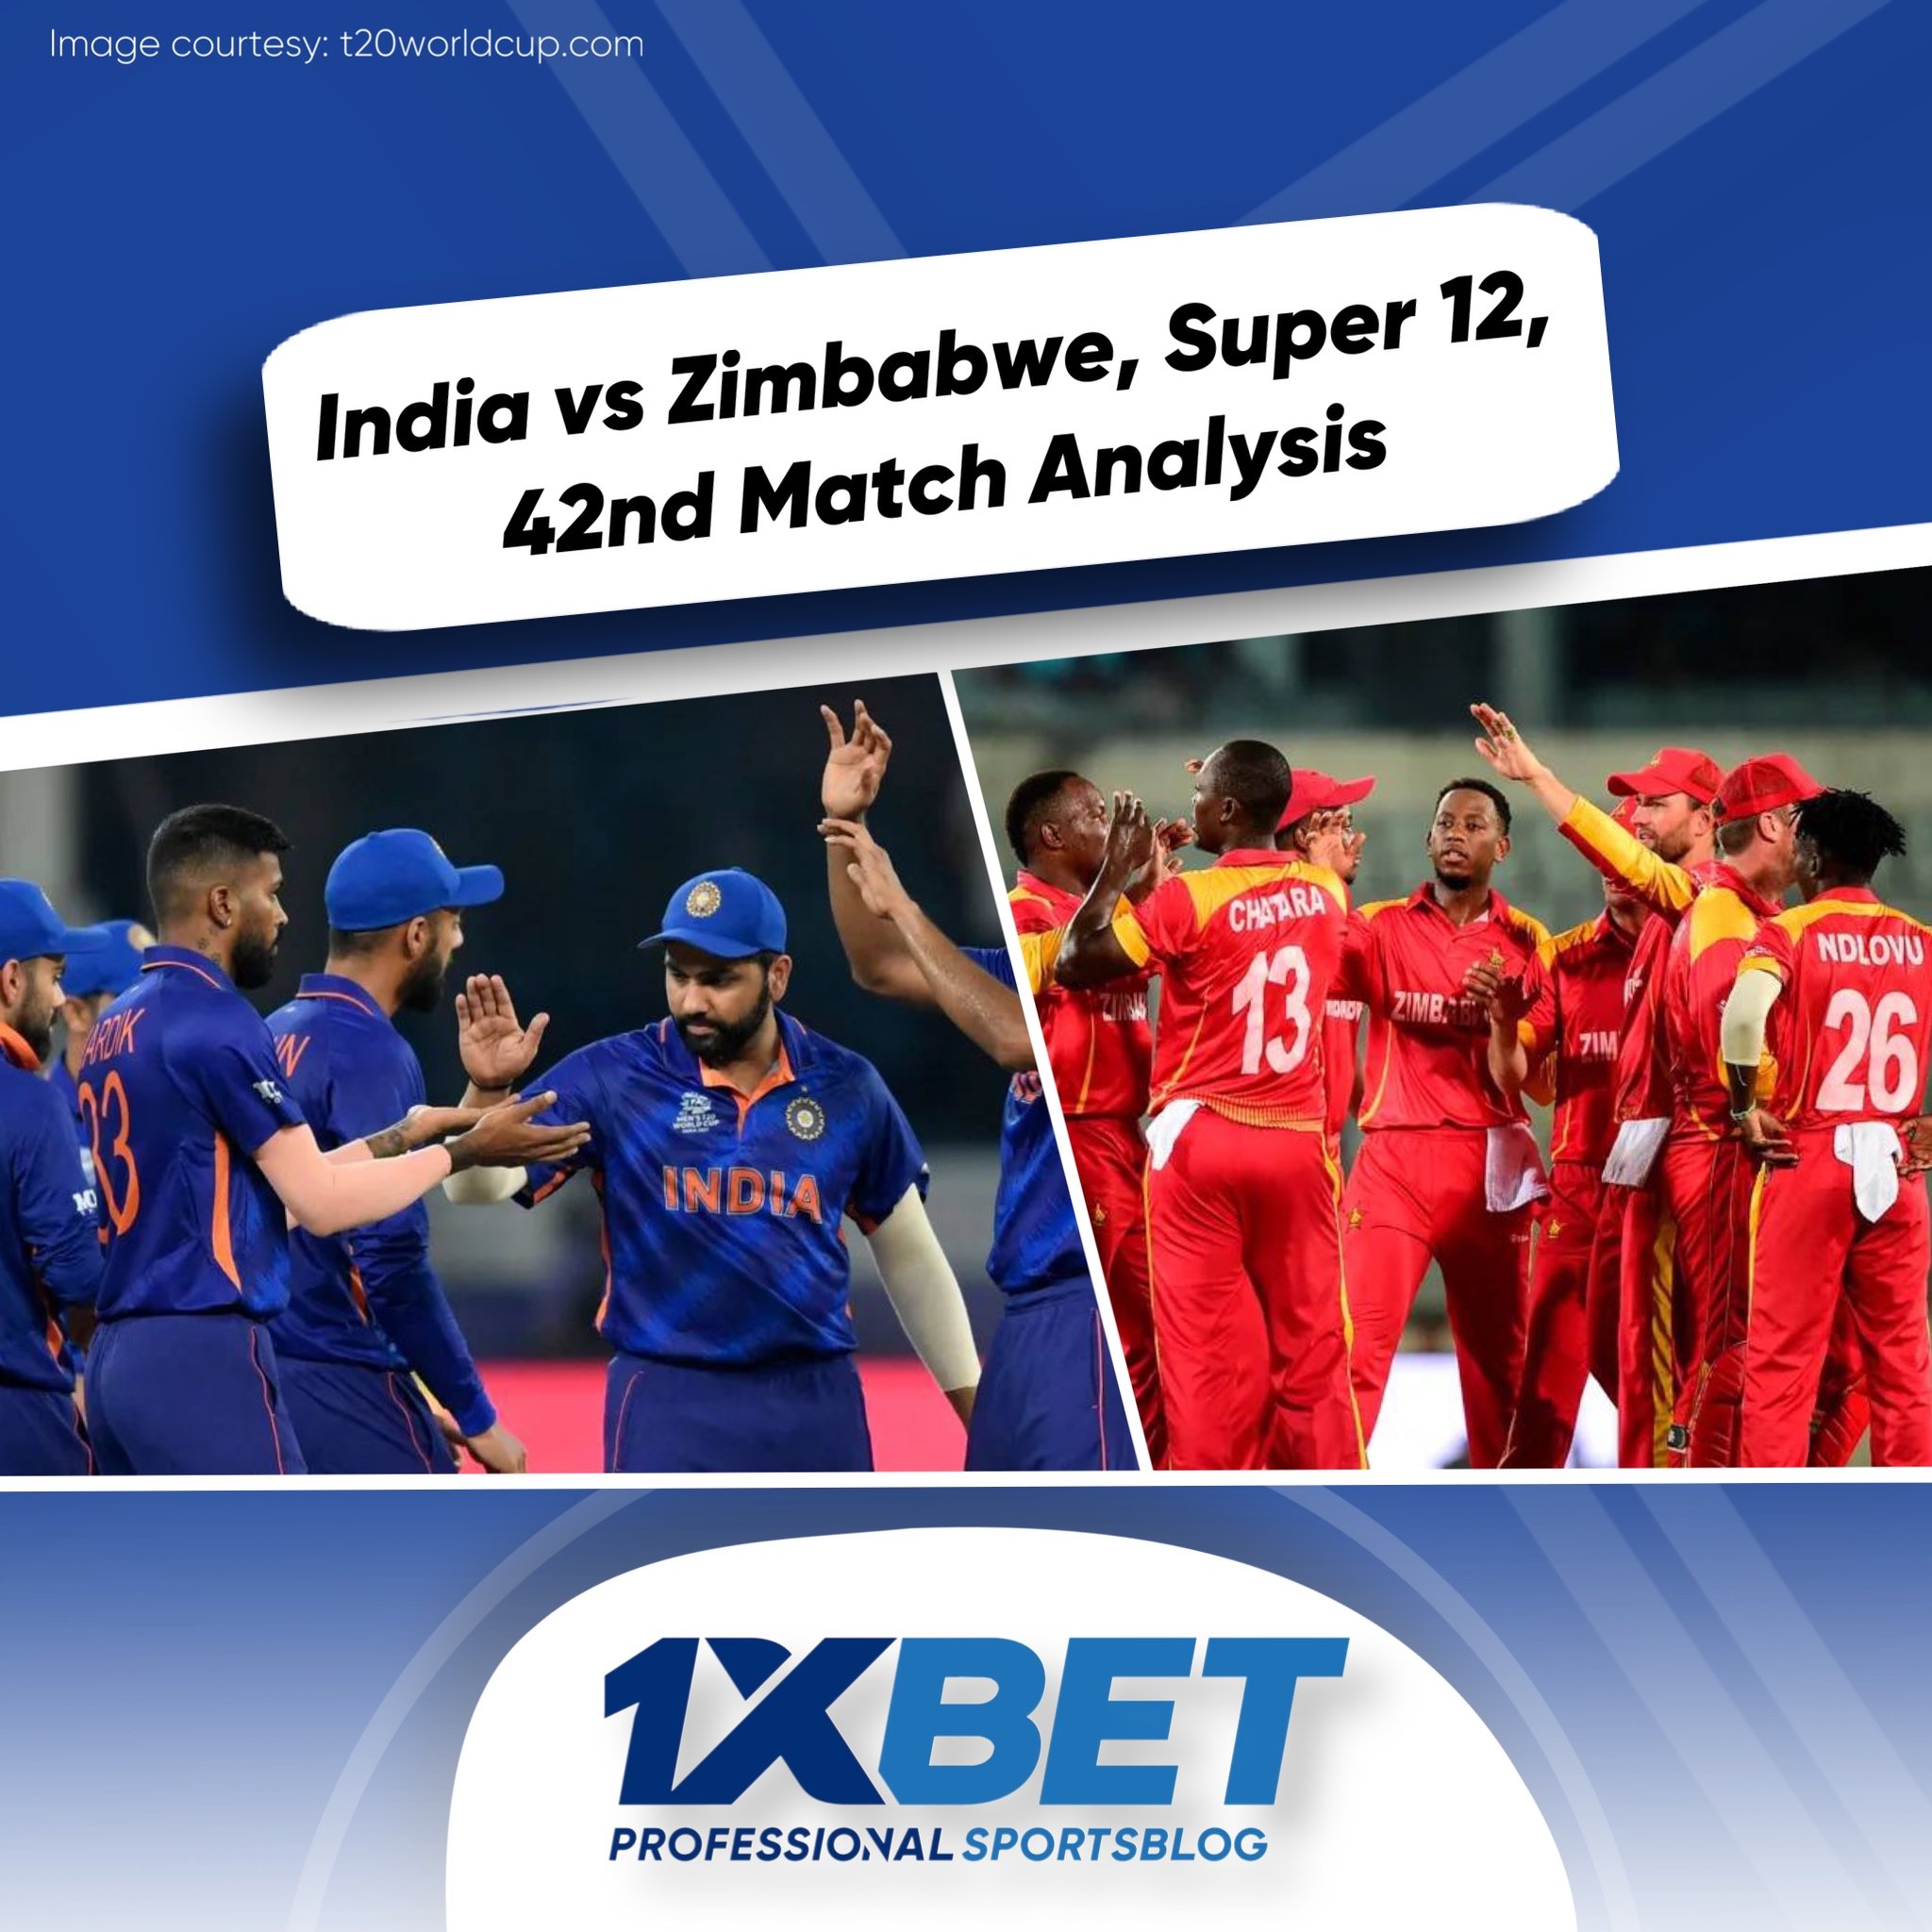 India vs Zimbabwe, Super 12, 42nd Match Analysis